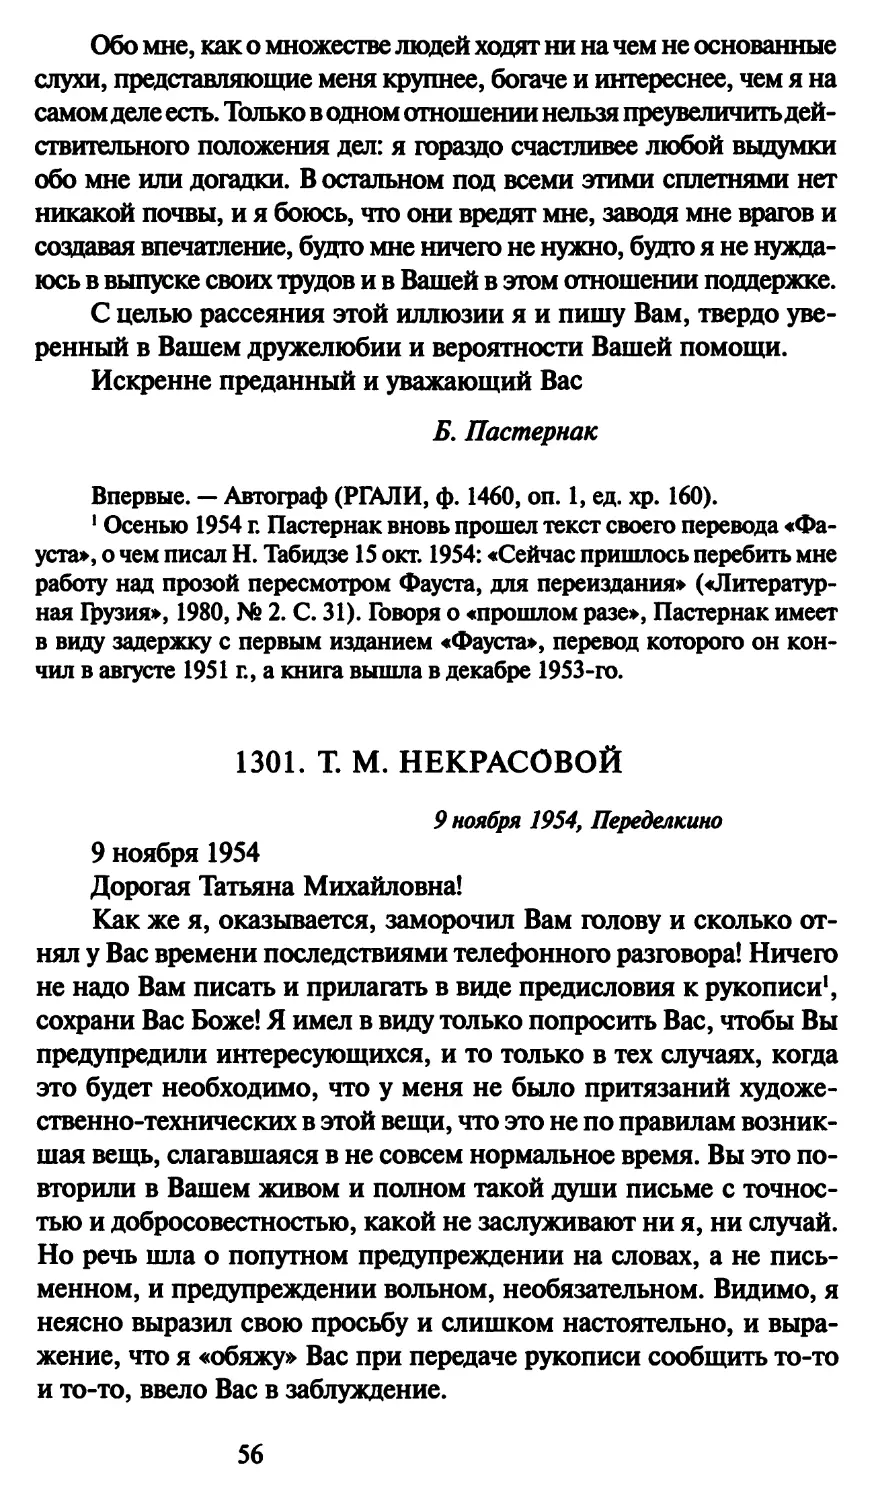 1301. Т. М. Некрасовой 9 ноября 1954